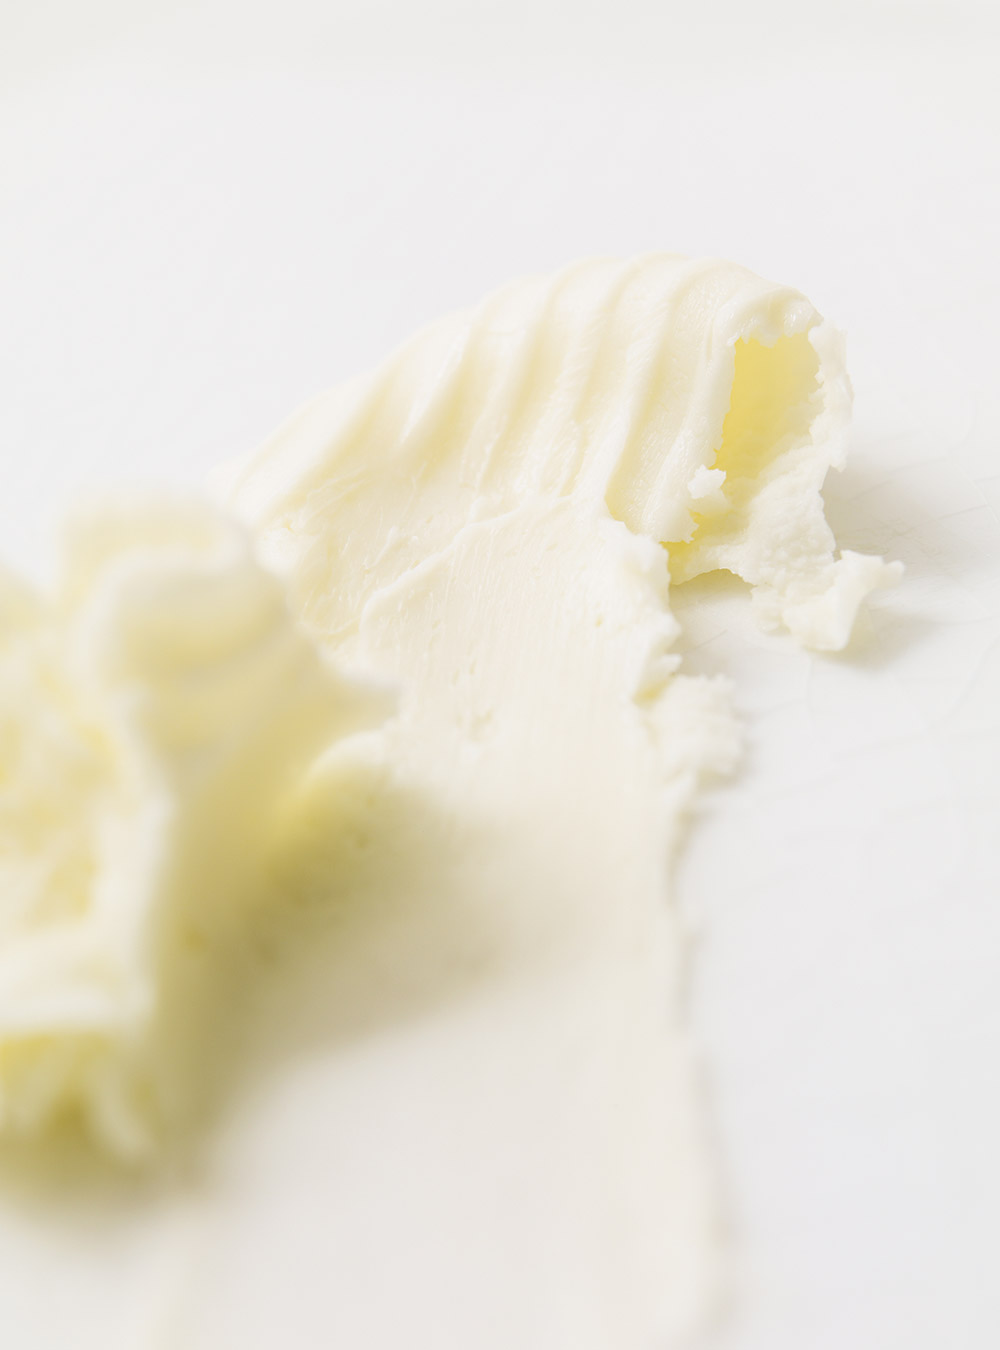 Beurre au parmesan